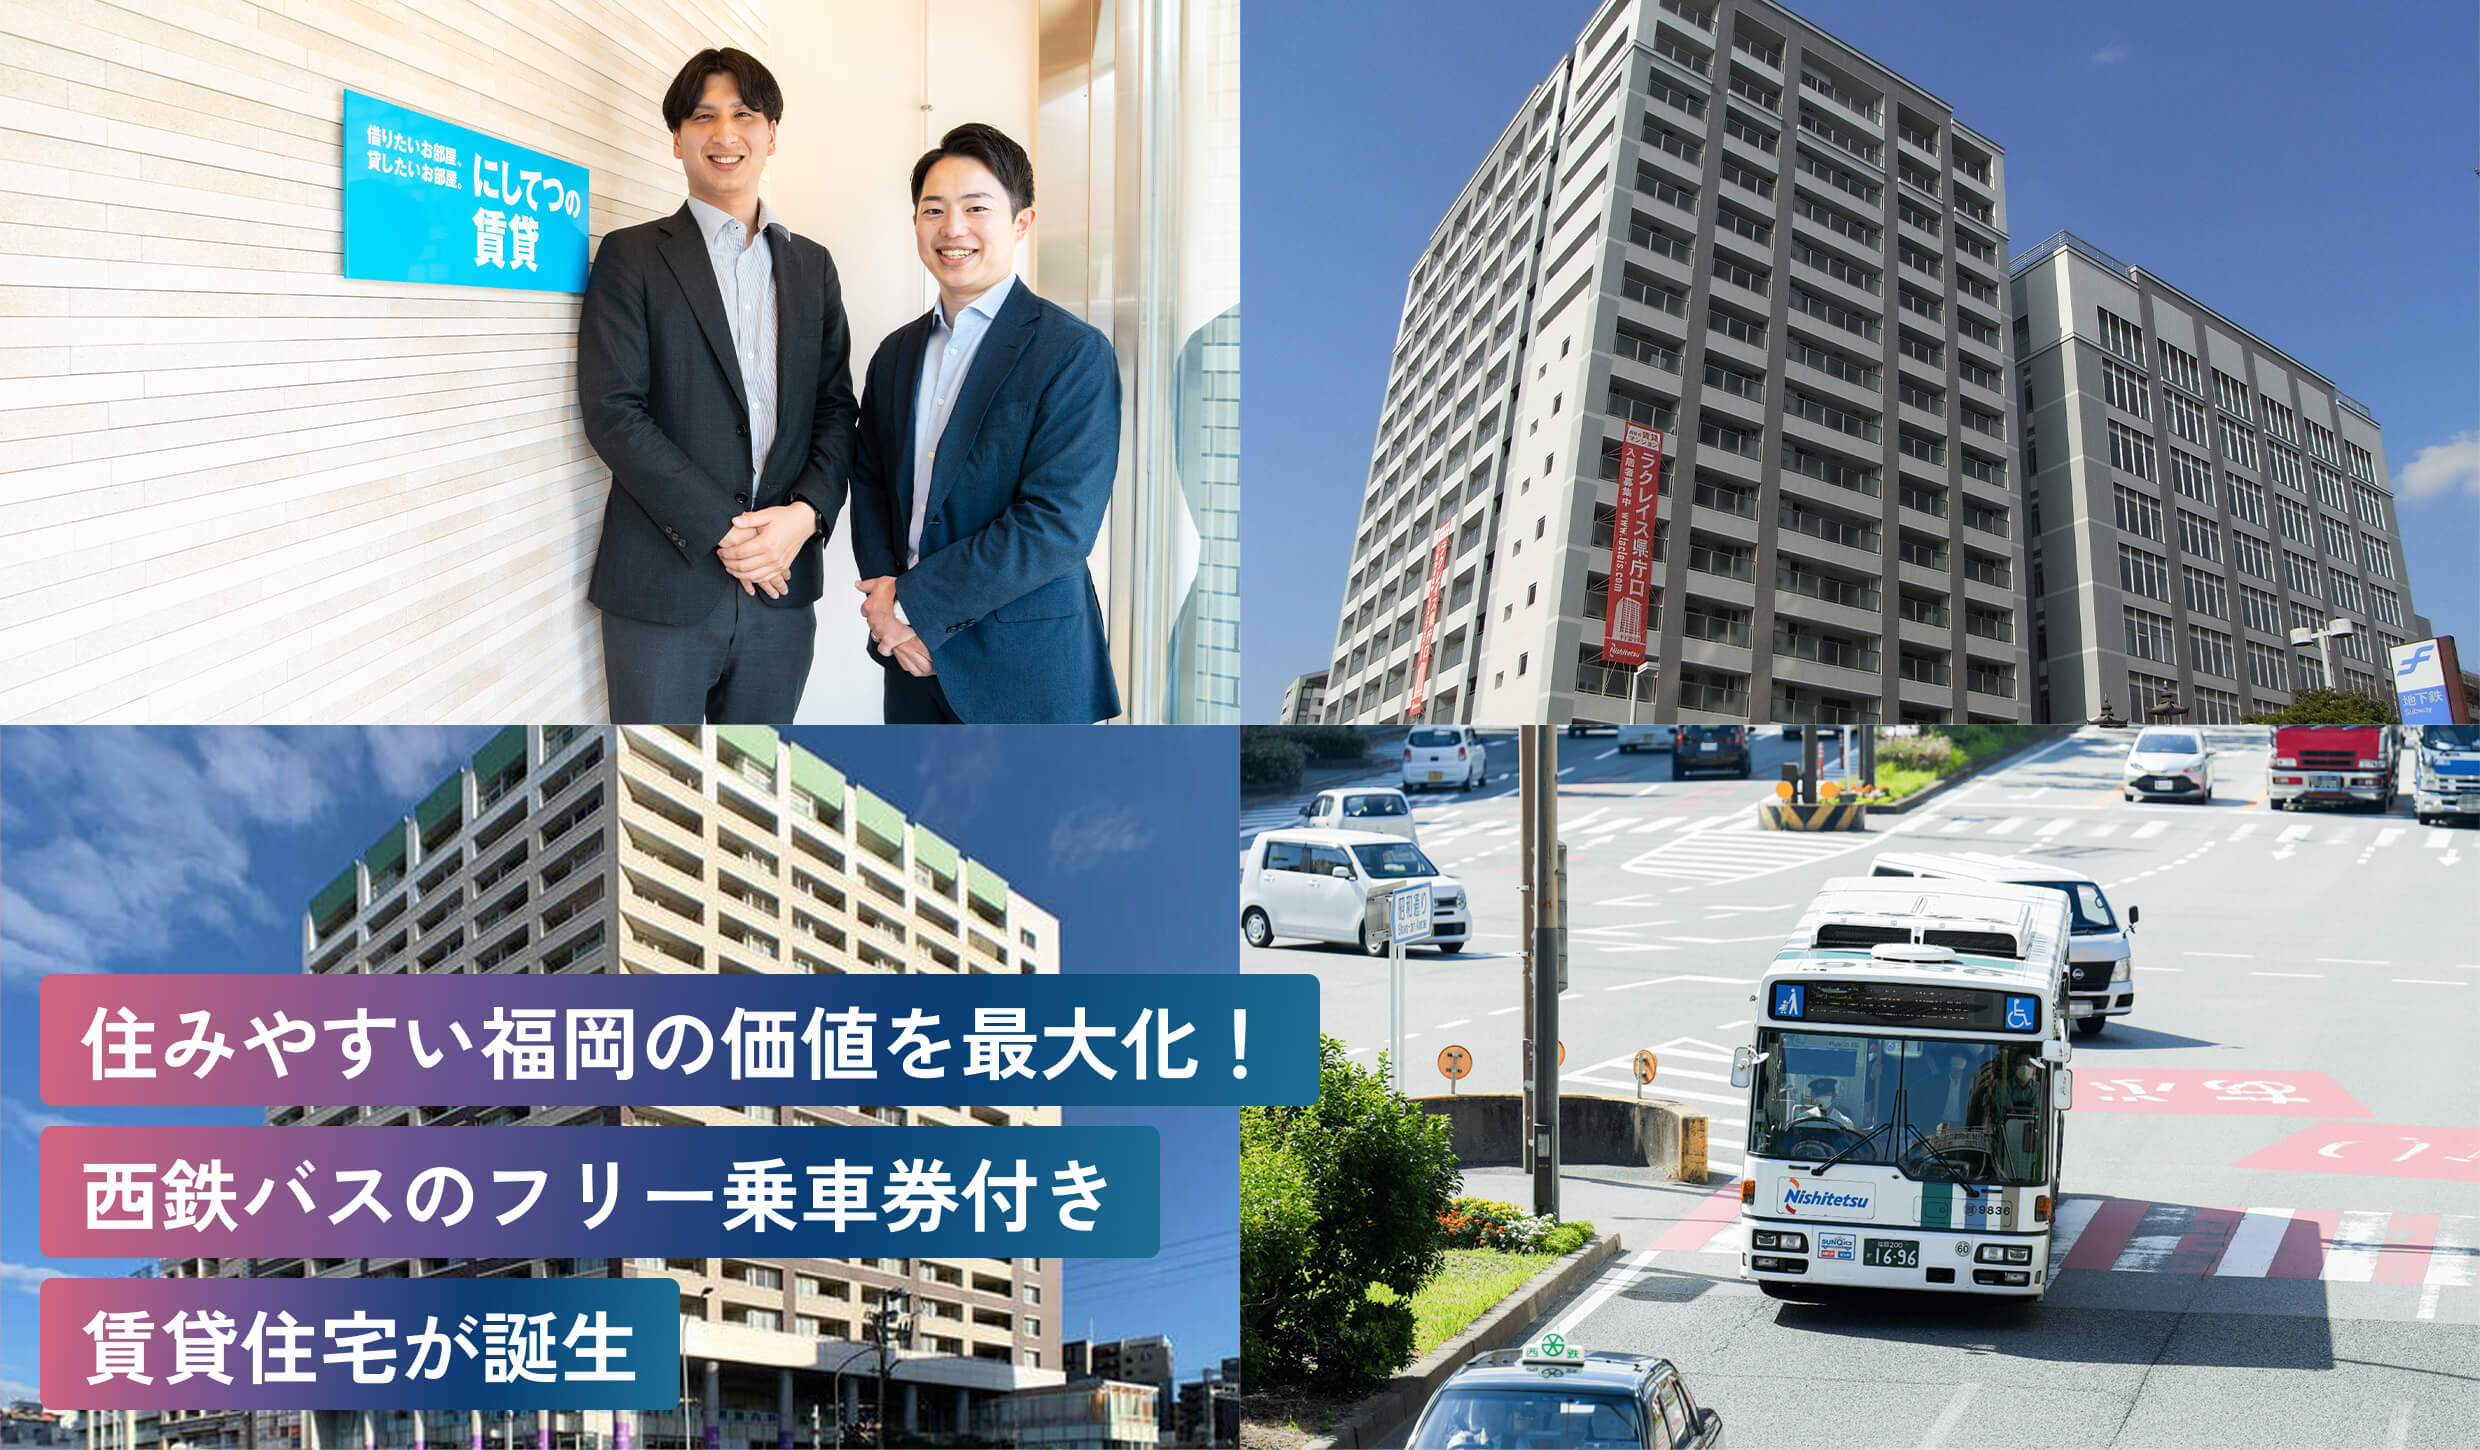 住みやすい福岡の価値を最大化！
西鉄バスのフリー乗車券付き
賃貸住宅が誕生